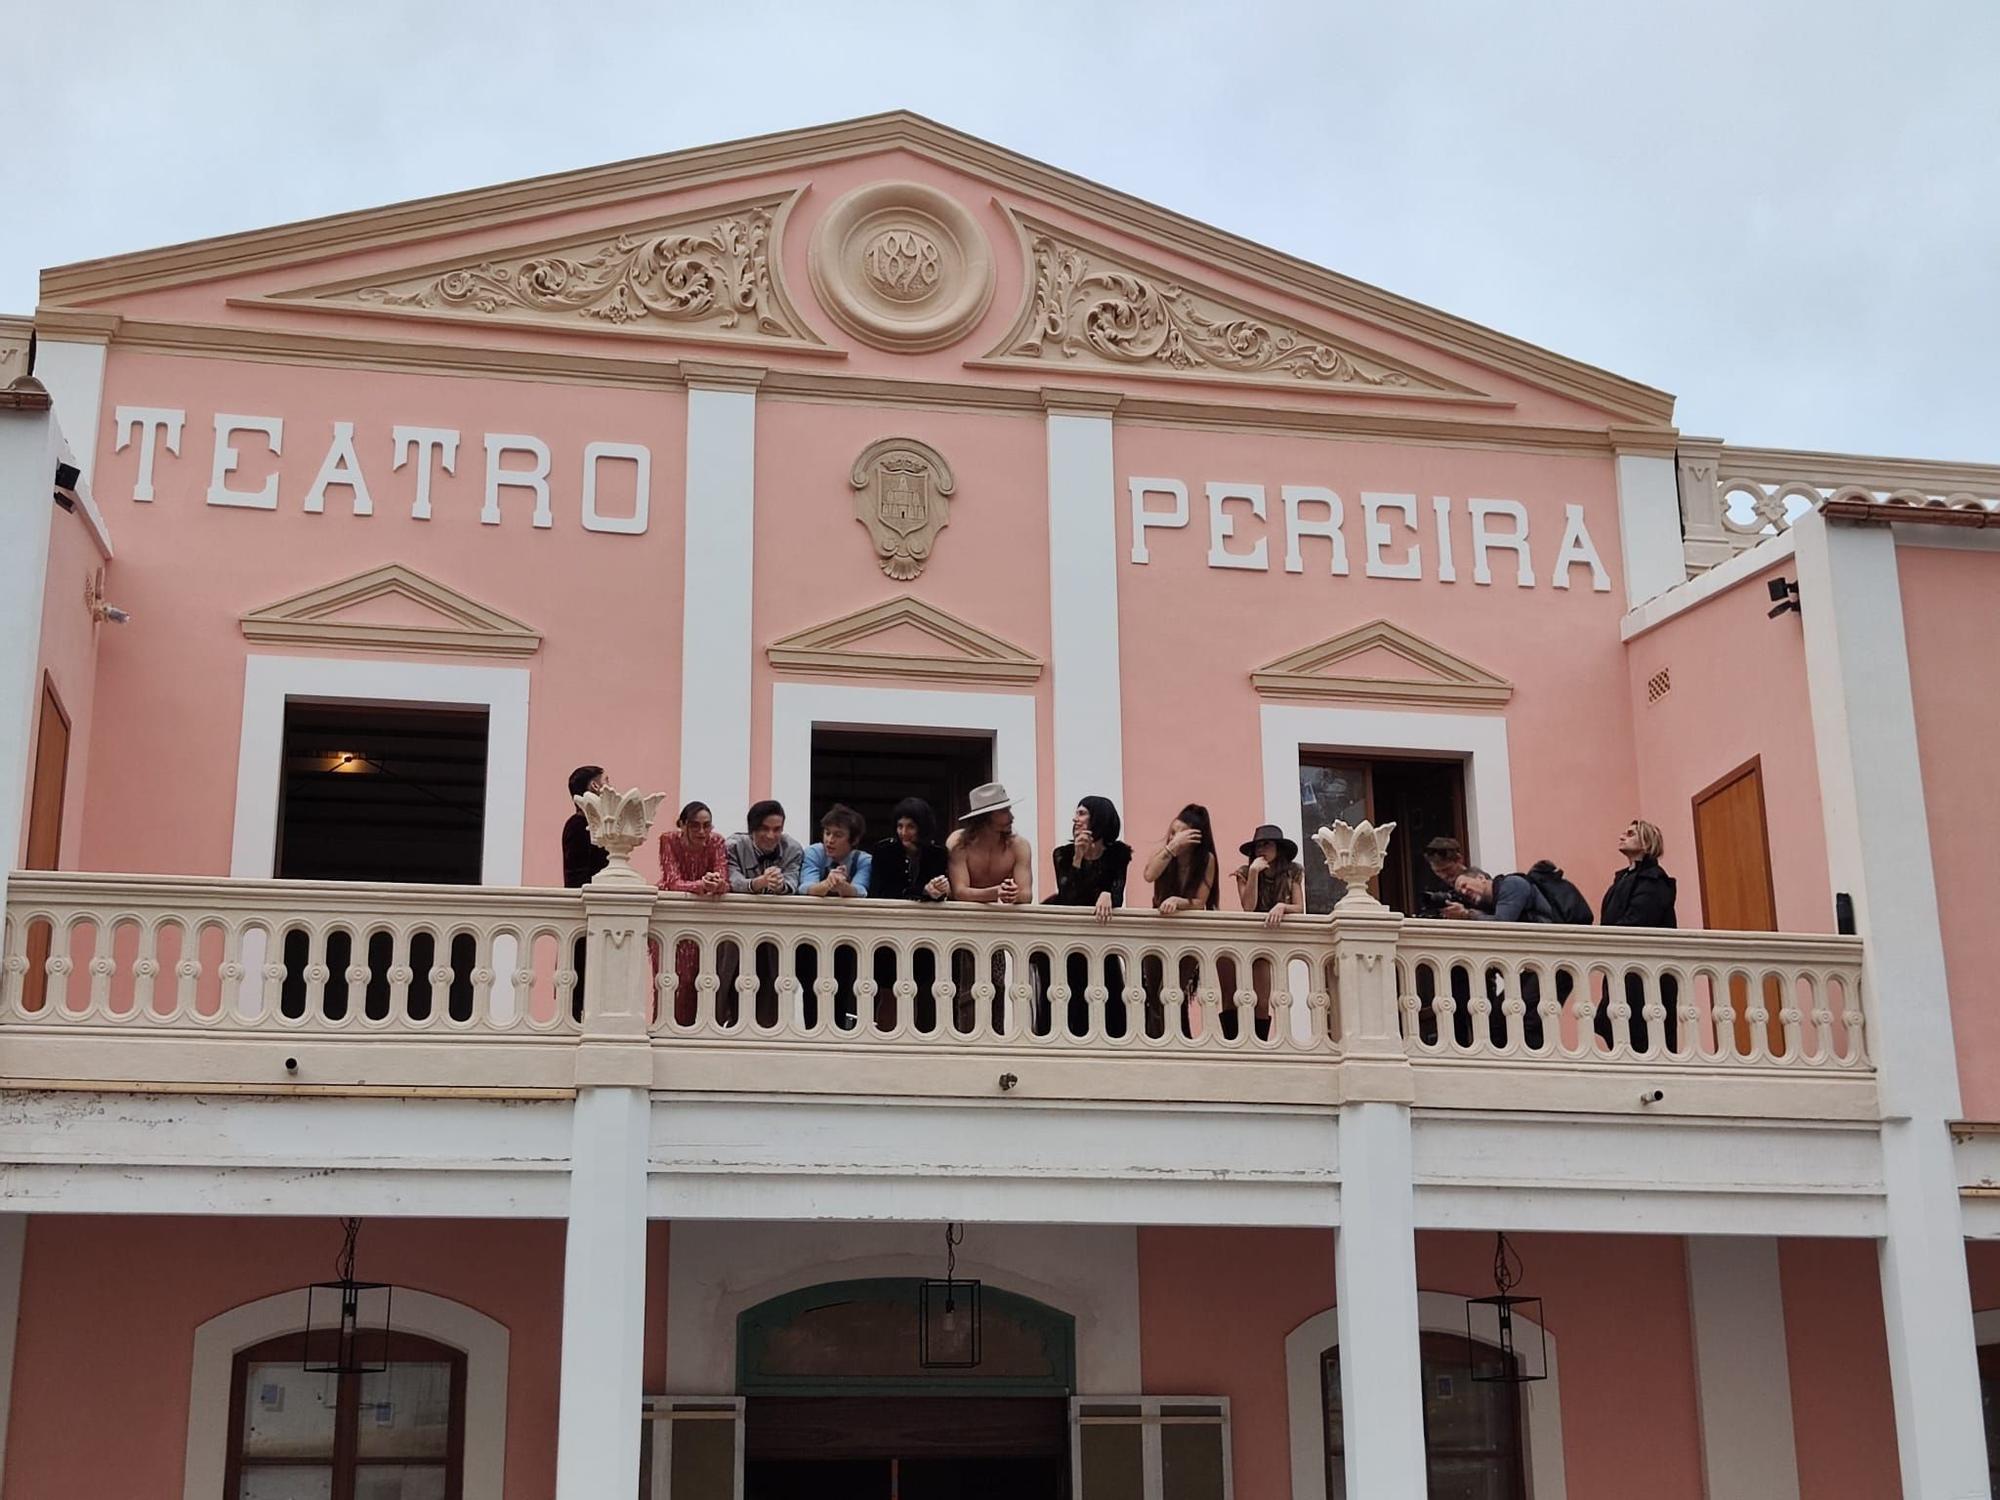 Sesión de fotos en el Teatro Pereyra de Ibiza con Nacho Cano